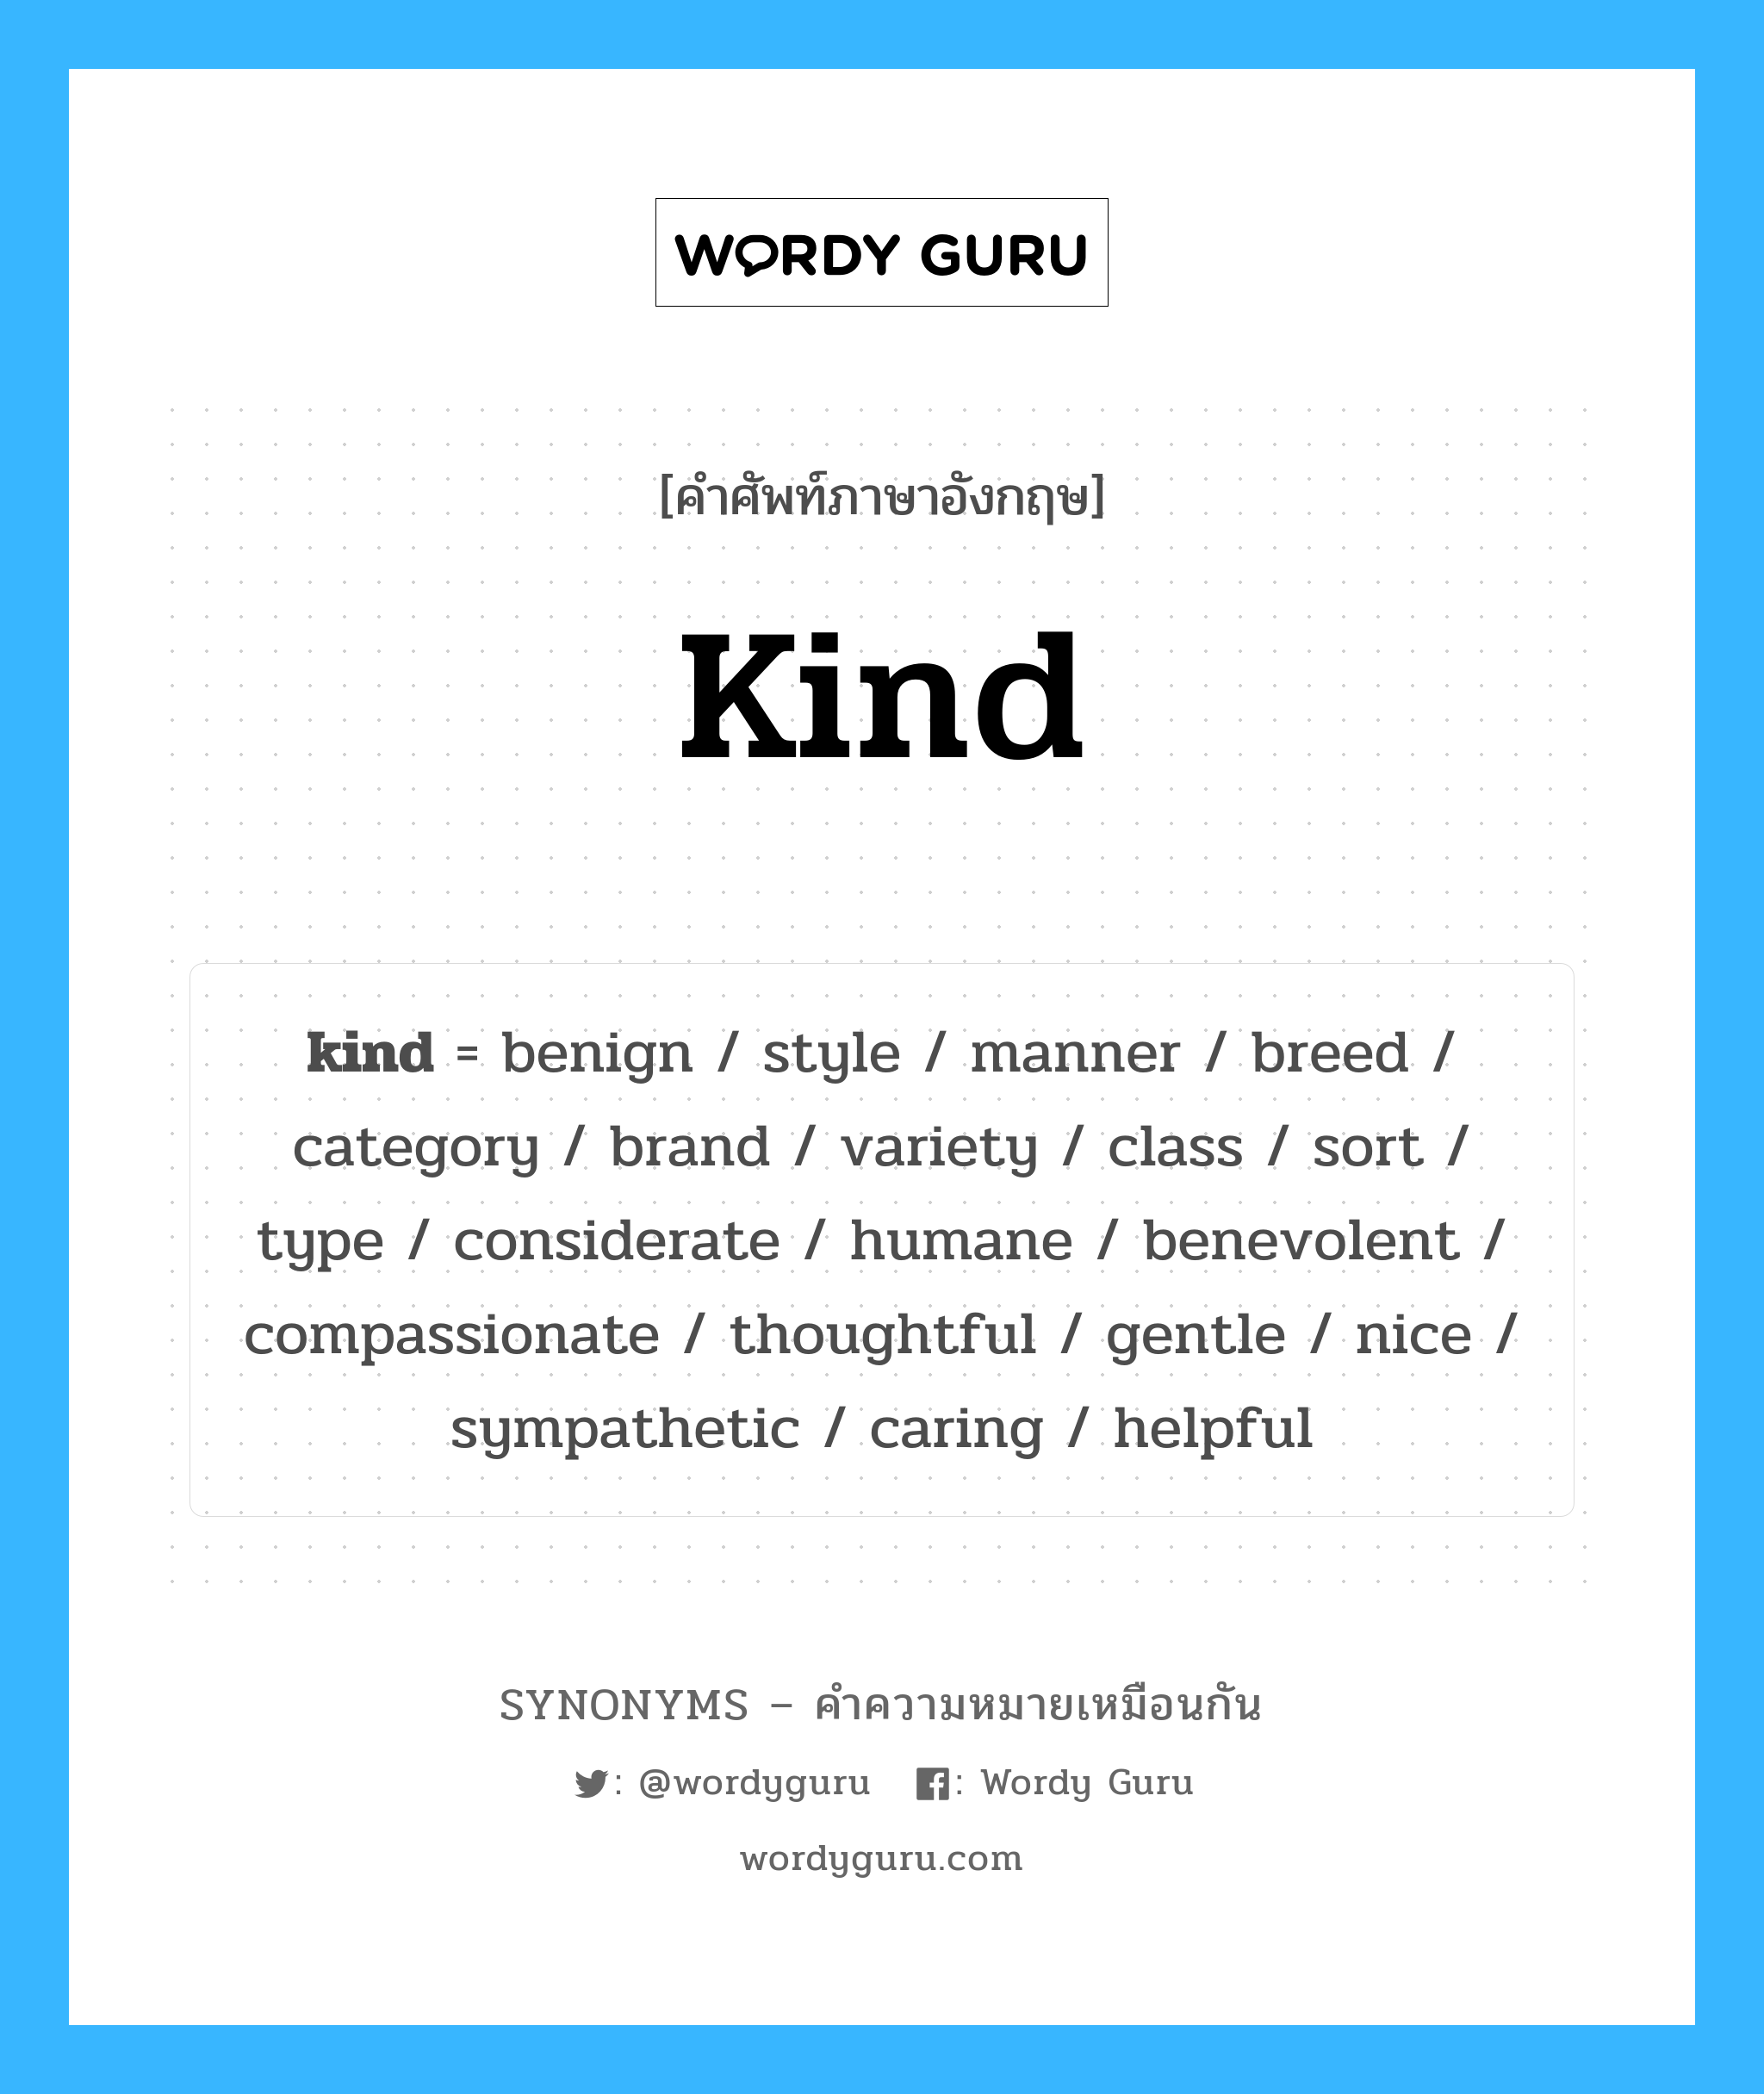 class เป็นหนึ่งใน kind และมีคำอื่น ๆ อีกดังนี้, คำศัพท์ภาษาอังกฤษ class ความหมายคล้ายกันกับ kind แปลว่า คลาส หมวด kind